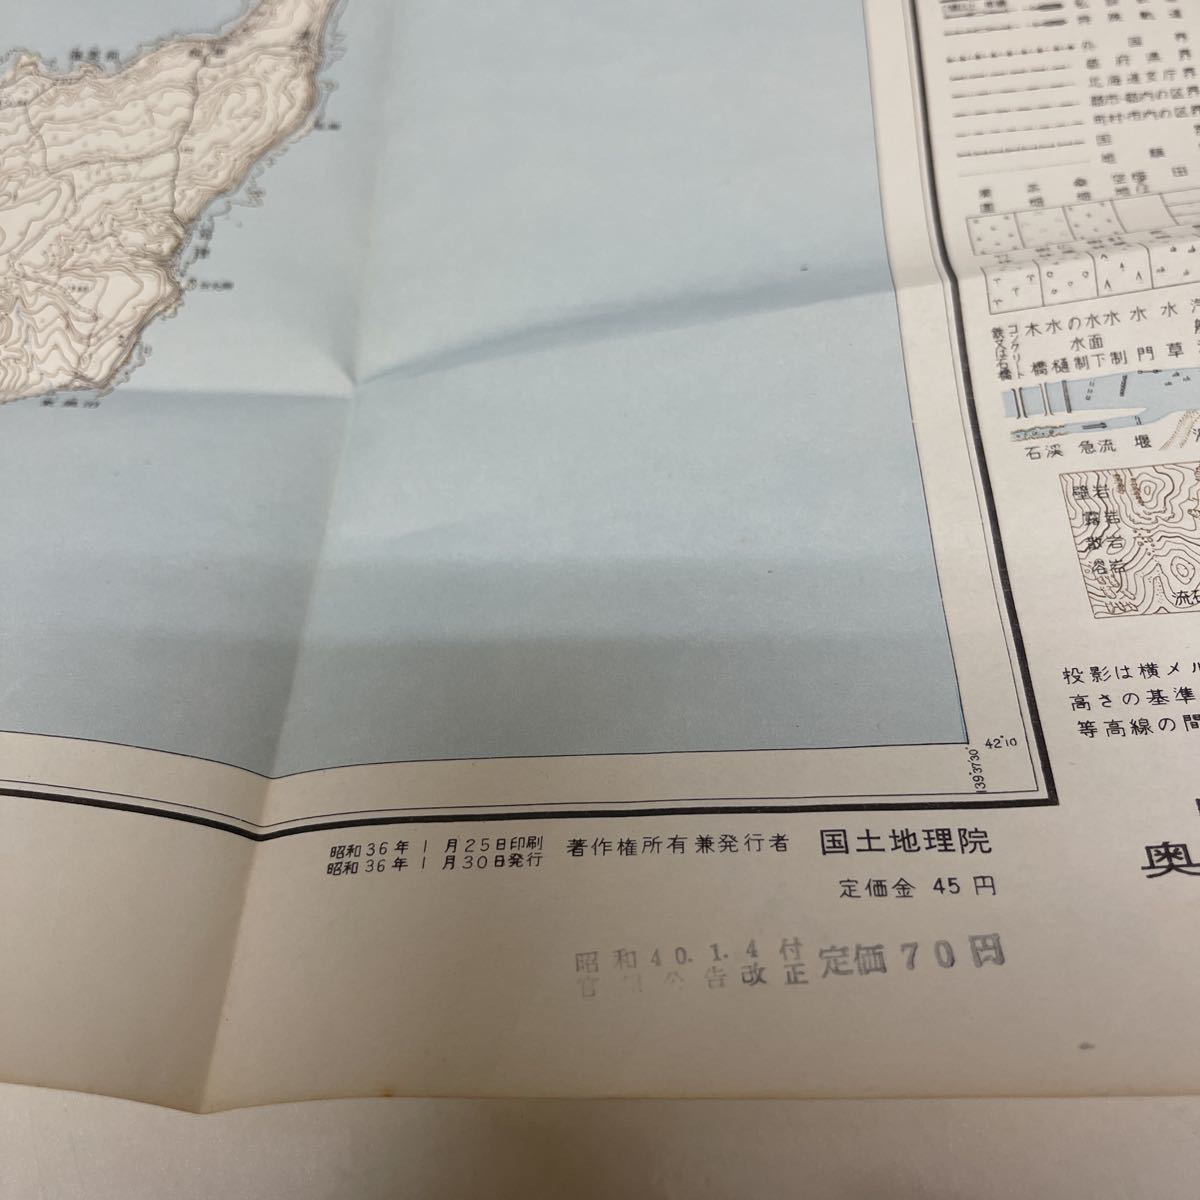 古地図 地形図 五万分之一 国土地理院 昭和32年測量 昭和36年発行 奥尻島北部 北海道_画像3